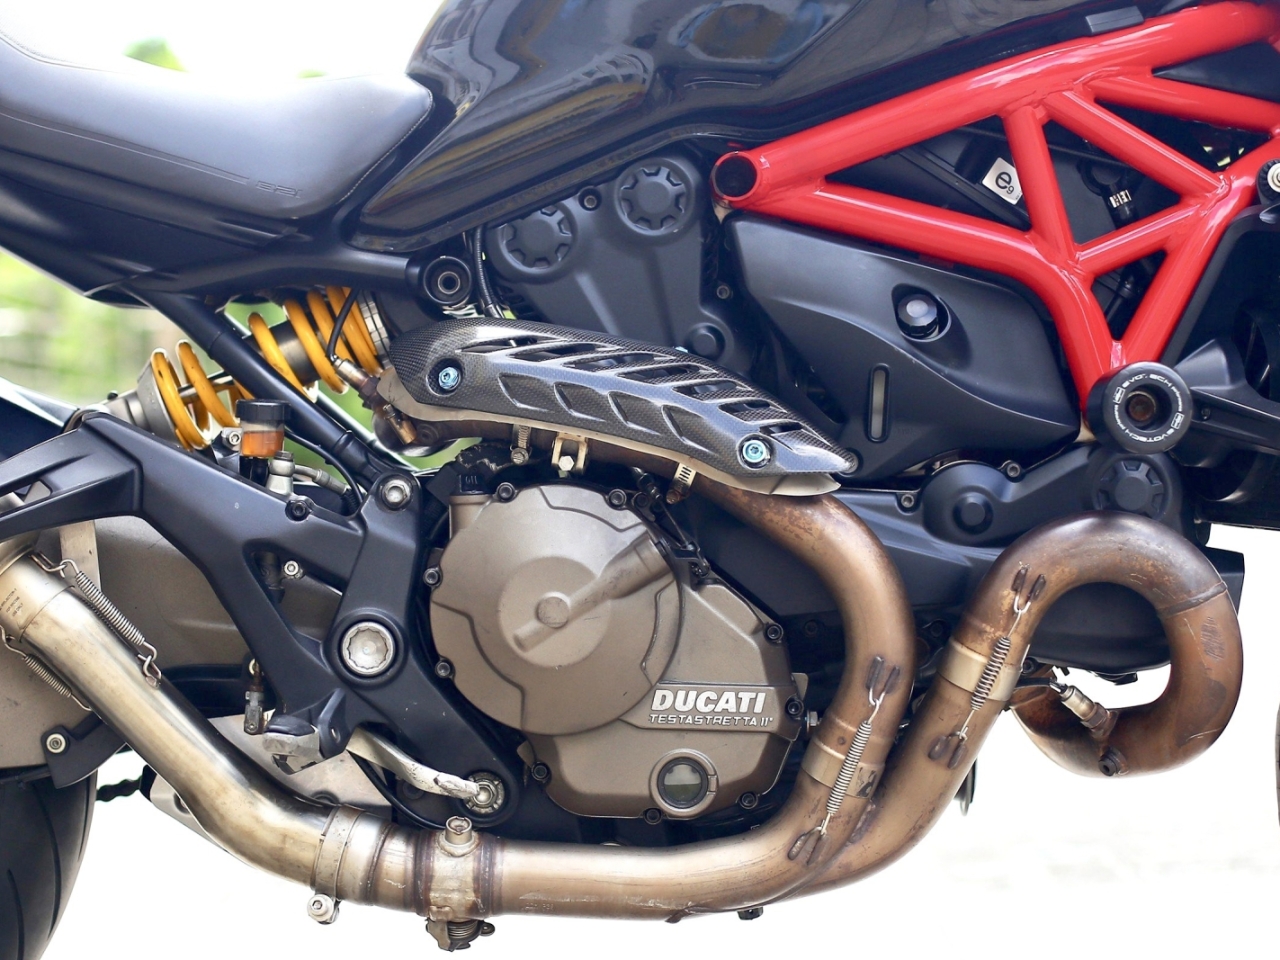 298. Ducati Monster 821 